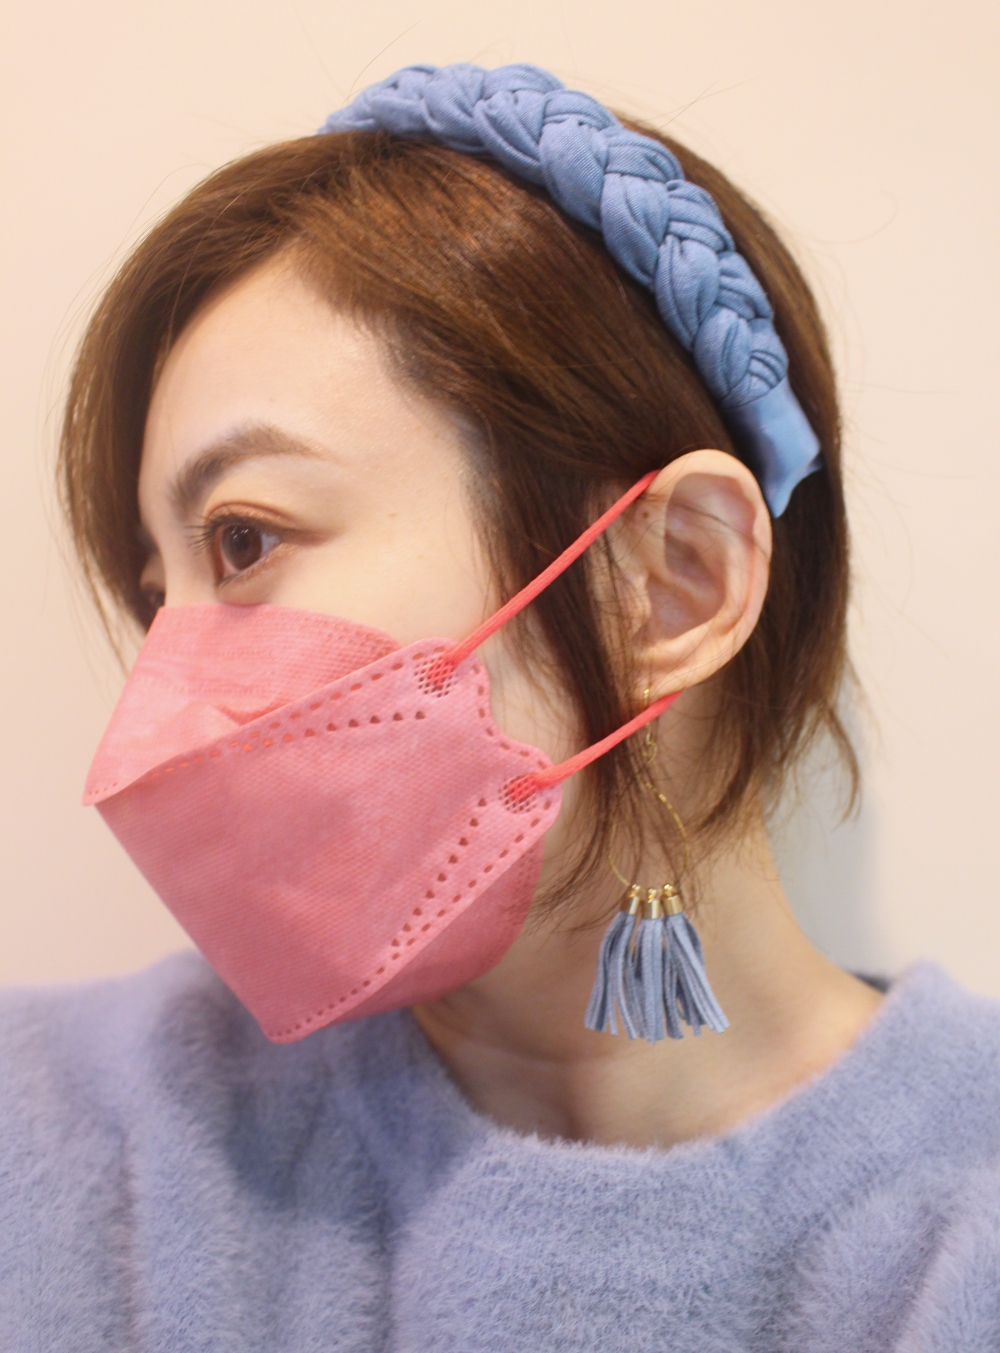 福德好罩韓式4D立體魚型口罩推薦 浪漫玫瑰 粉紅色魚型口罩側面鬆緊帶